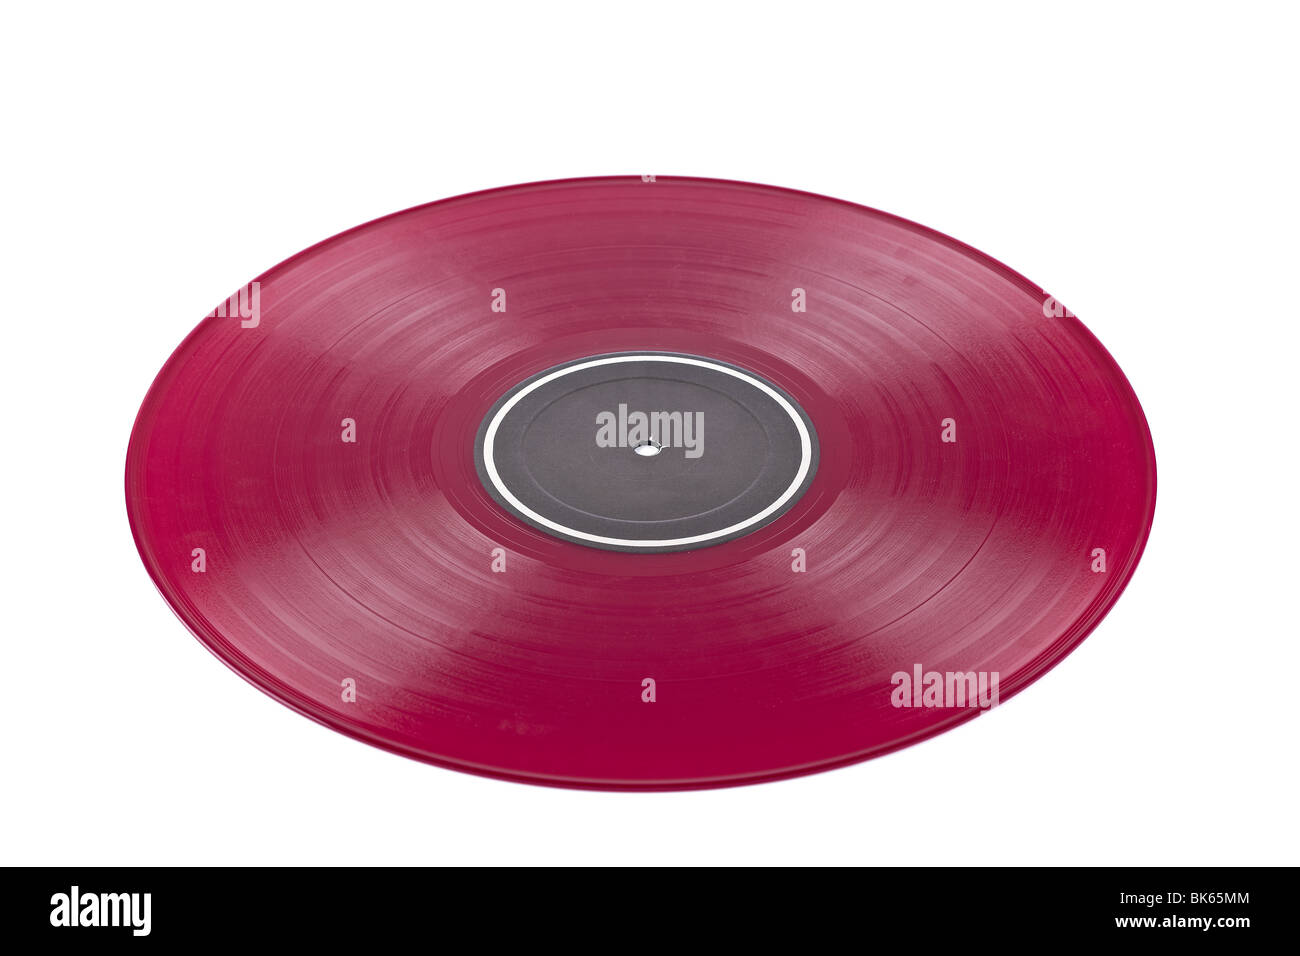 Staubigen roten Vinyl-Platte mit schwarzem Etikett isoliert auf weißem Hintergrund. Geringe Schärfentiefe Stockfoto